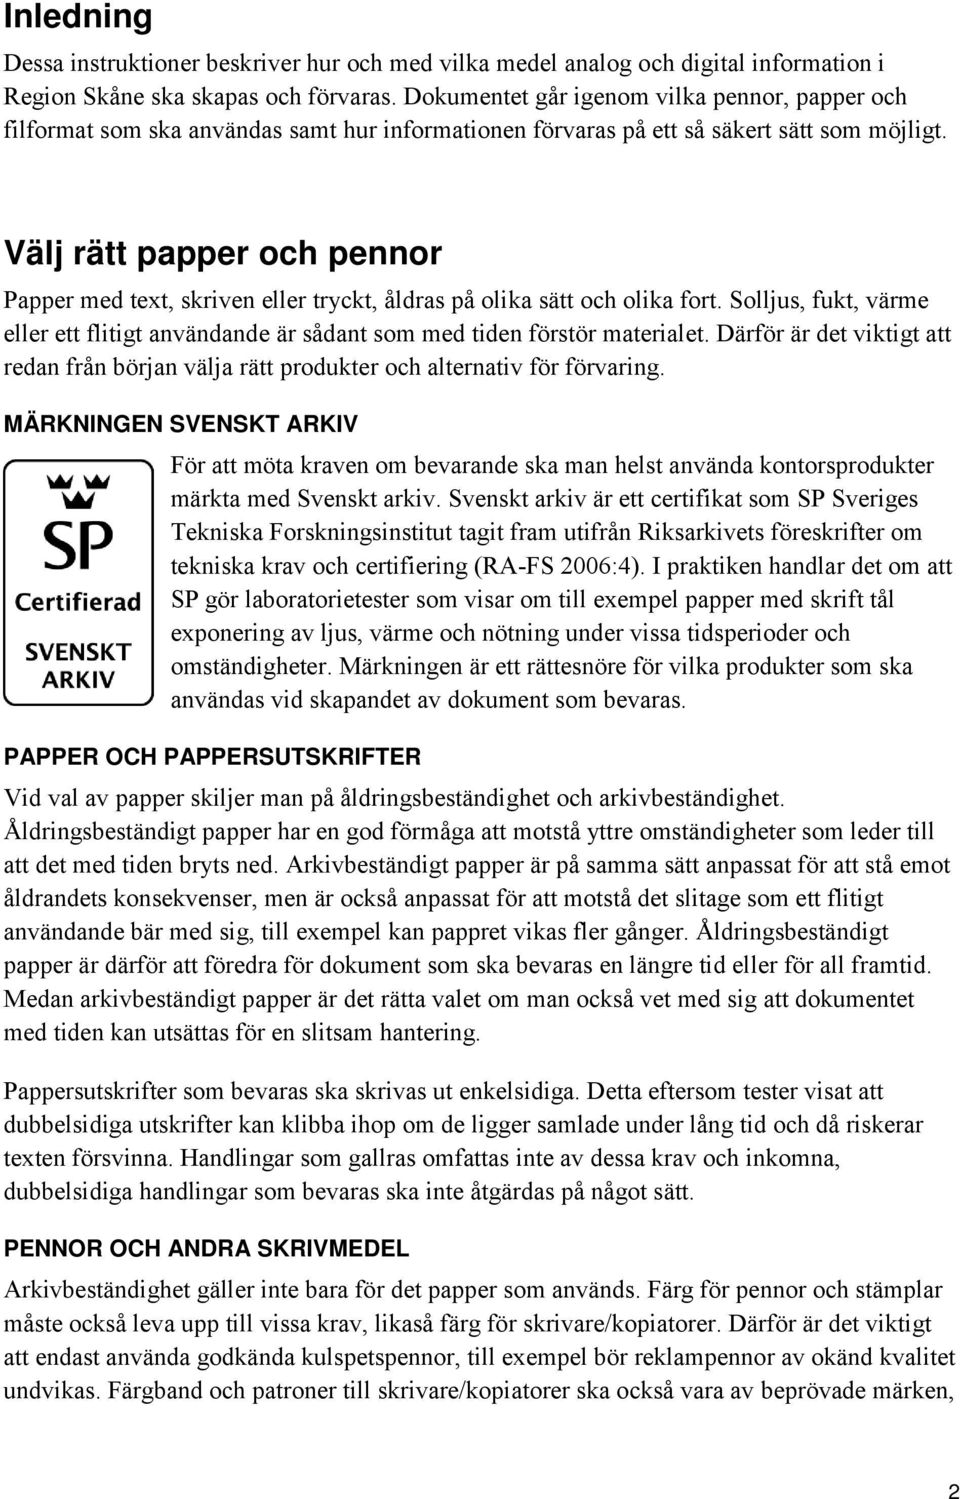 Inledning Välj rätt papper och pennor Märkningen Svenskt arkiv Papper och  pappersutskrifter Pennor och andra skrivmedel... - PDF Gratis nedladdning